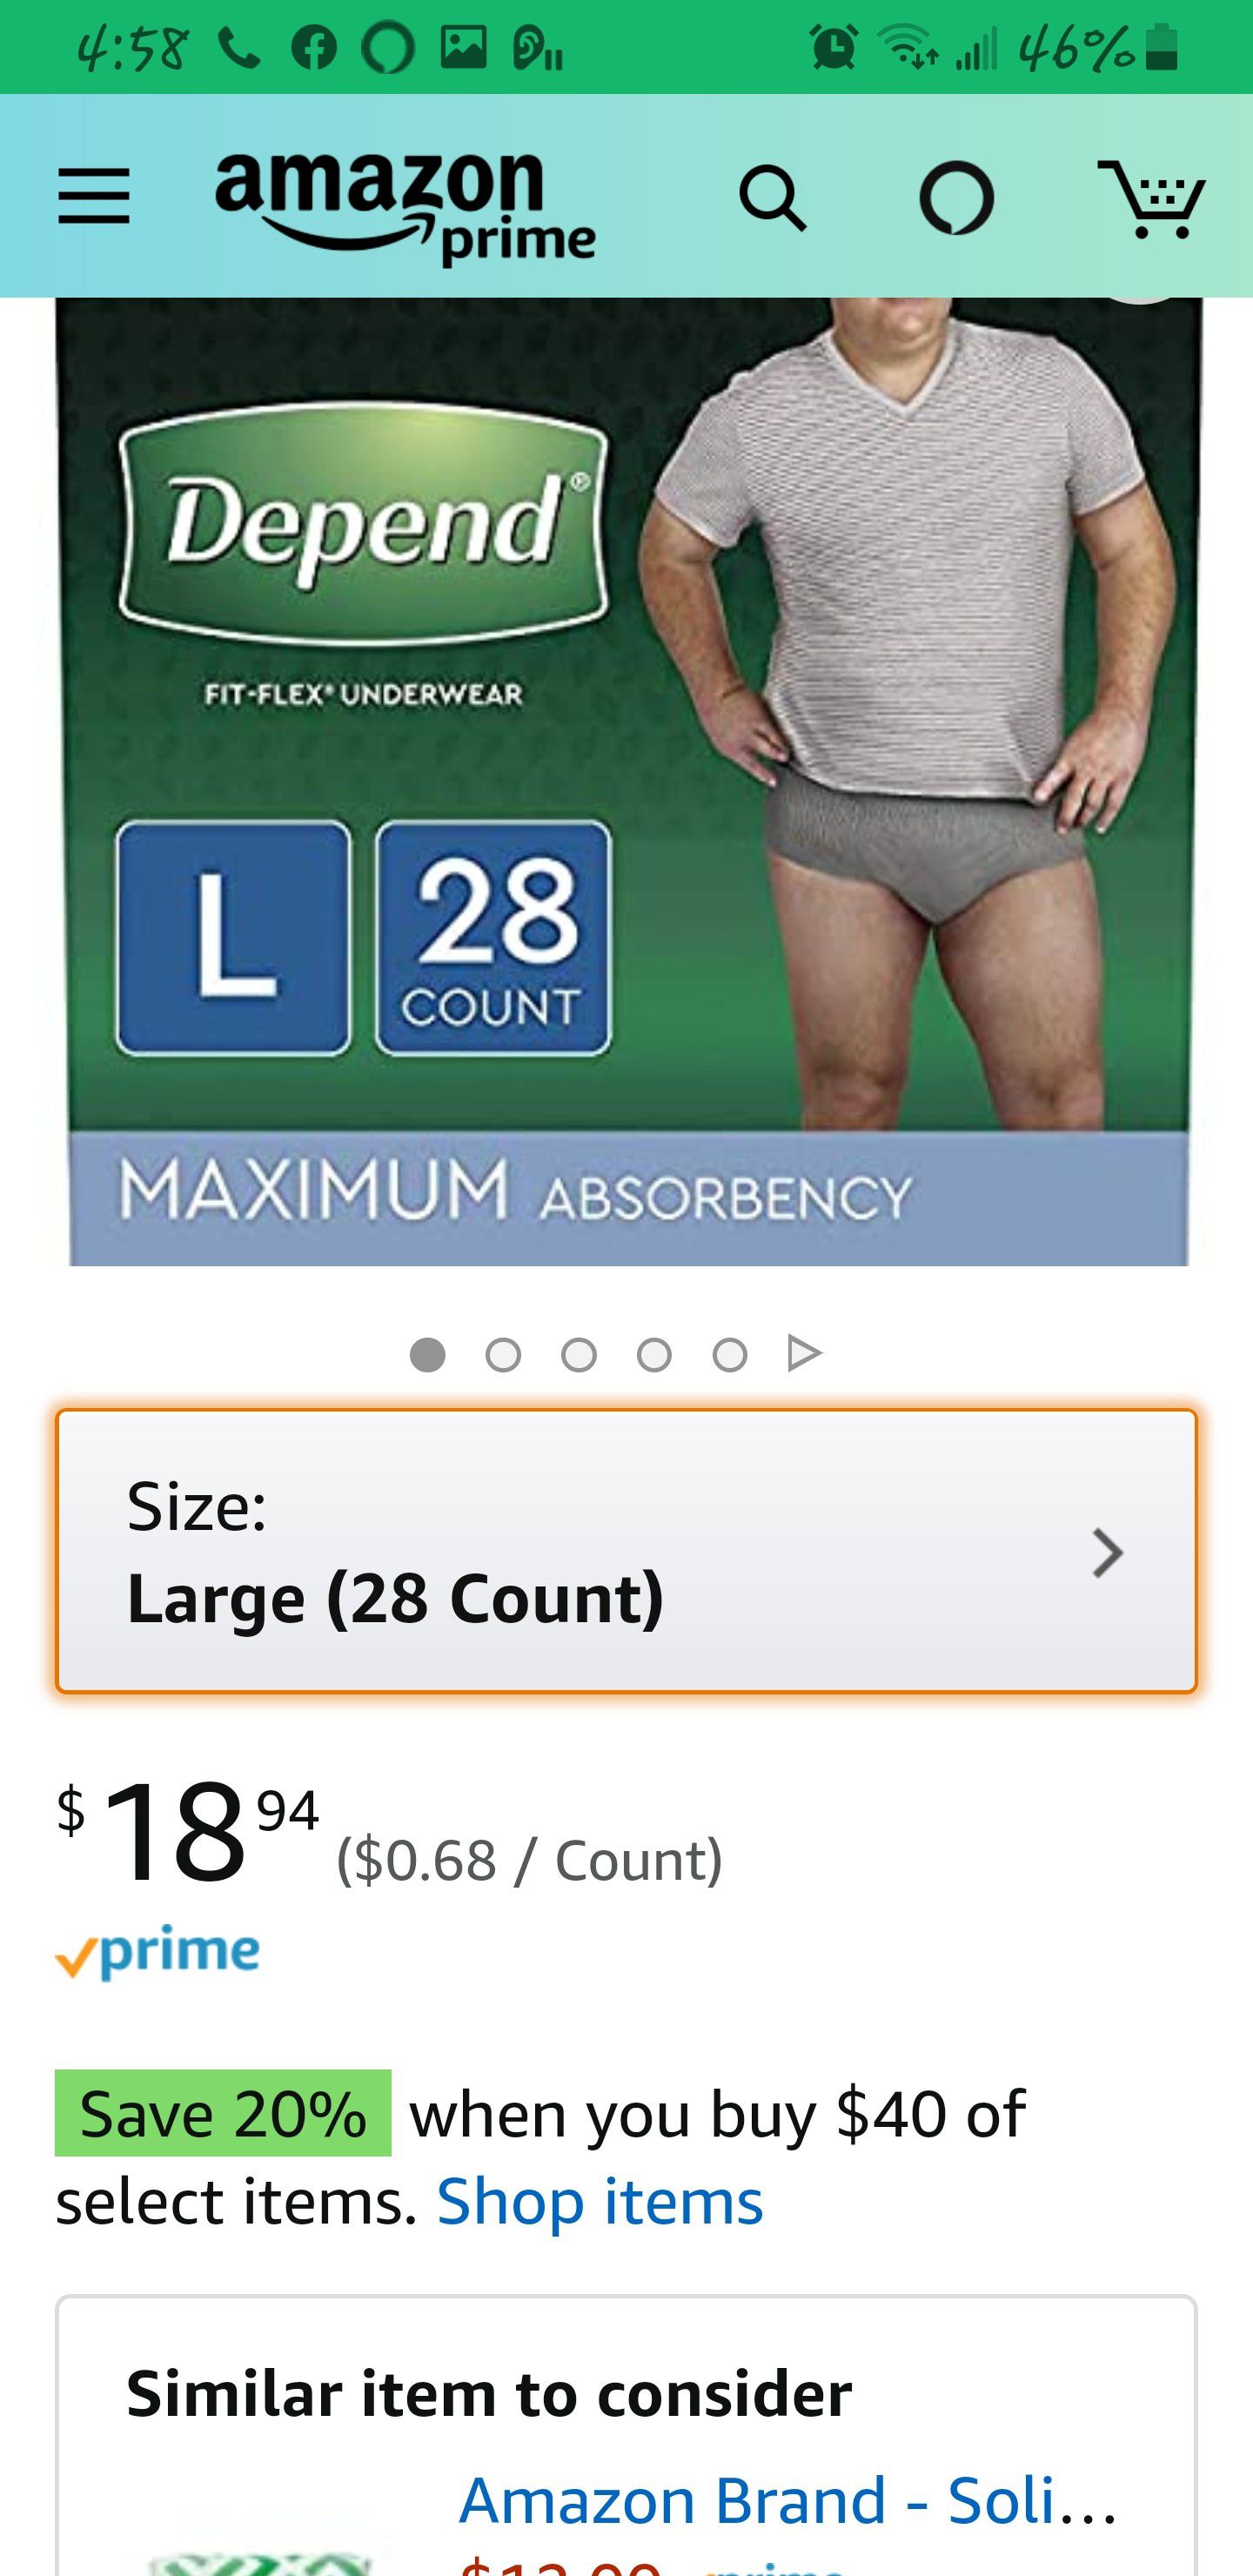 Underwear fit-flex for MEN